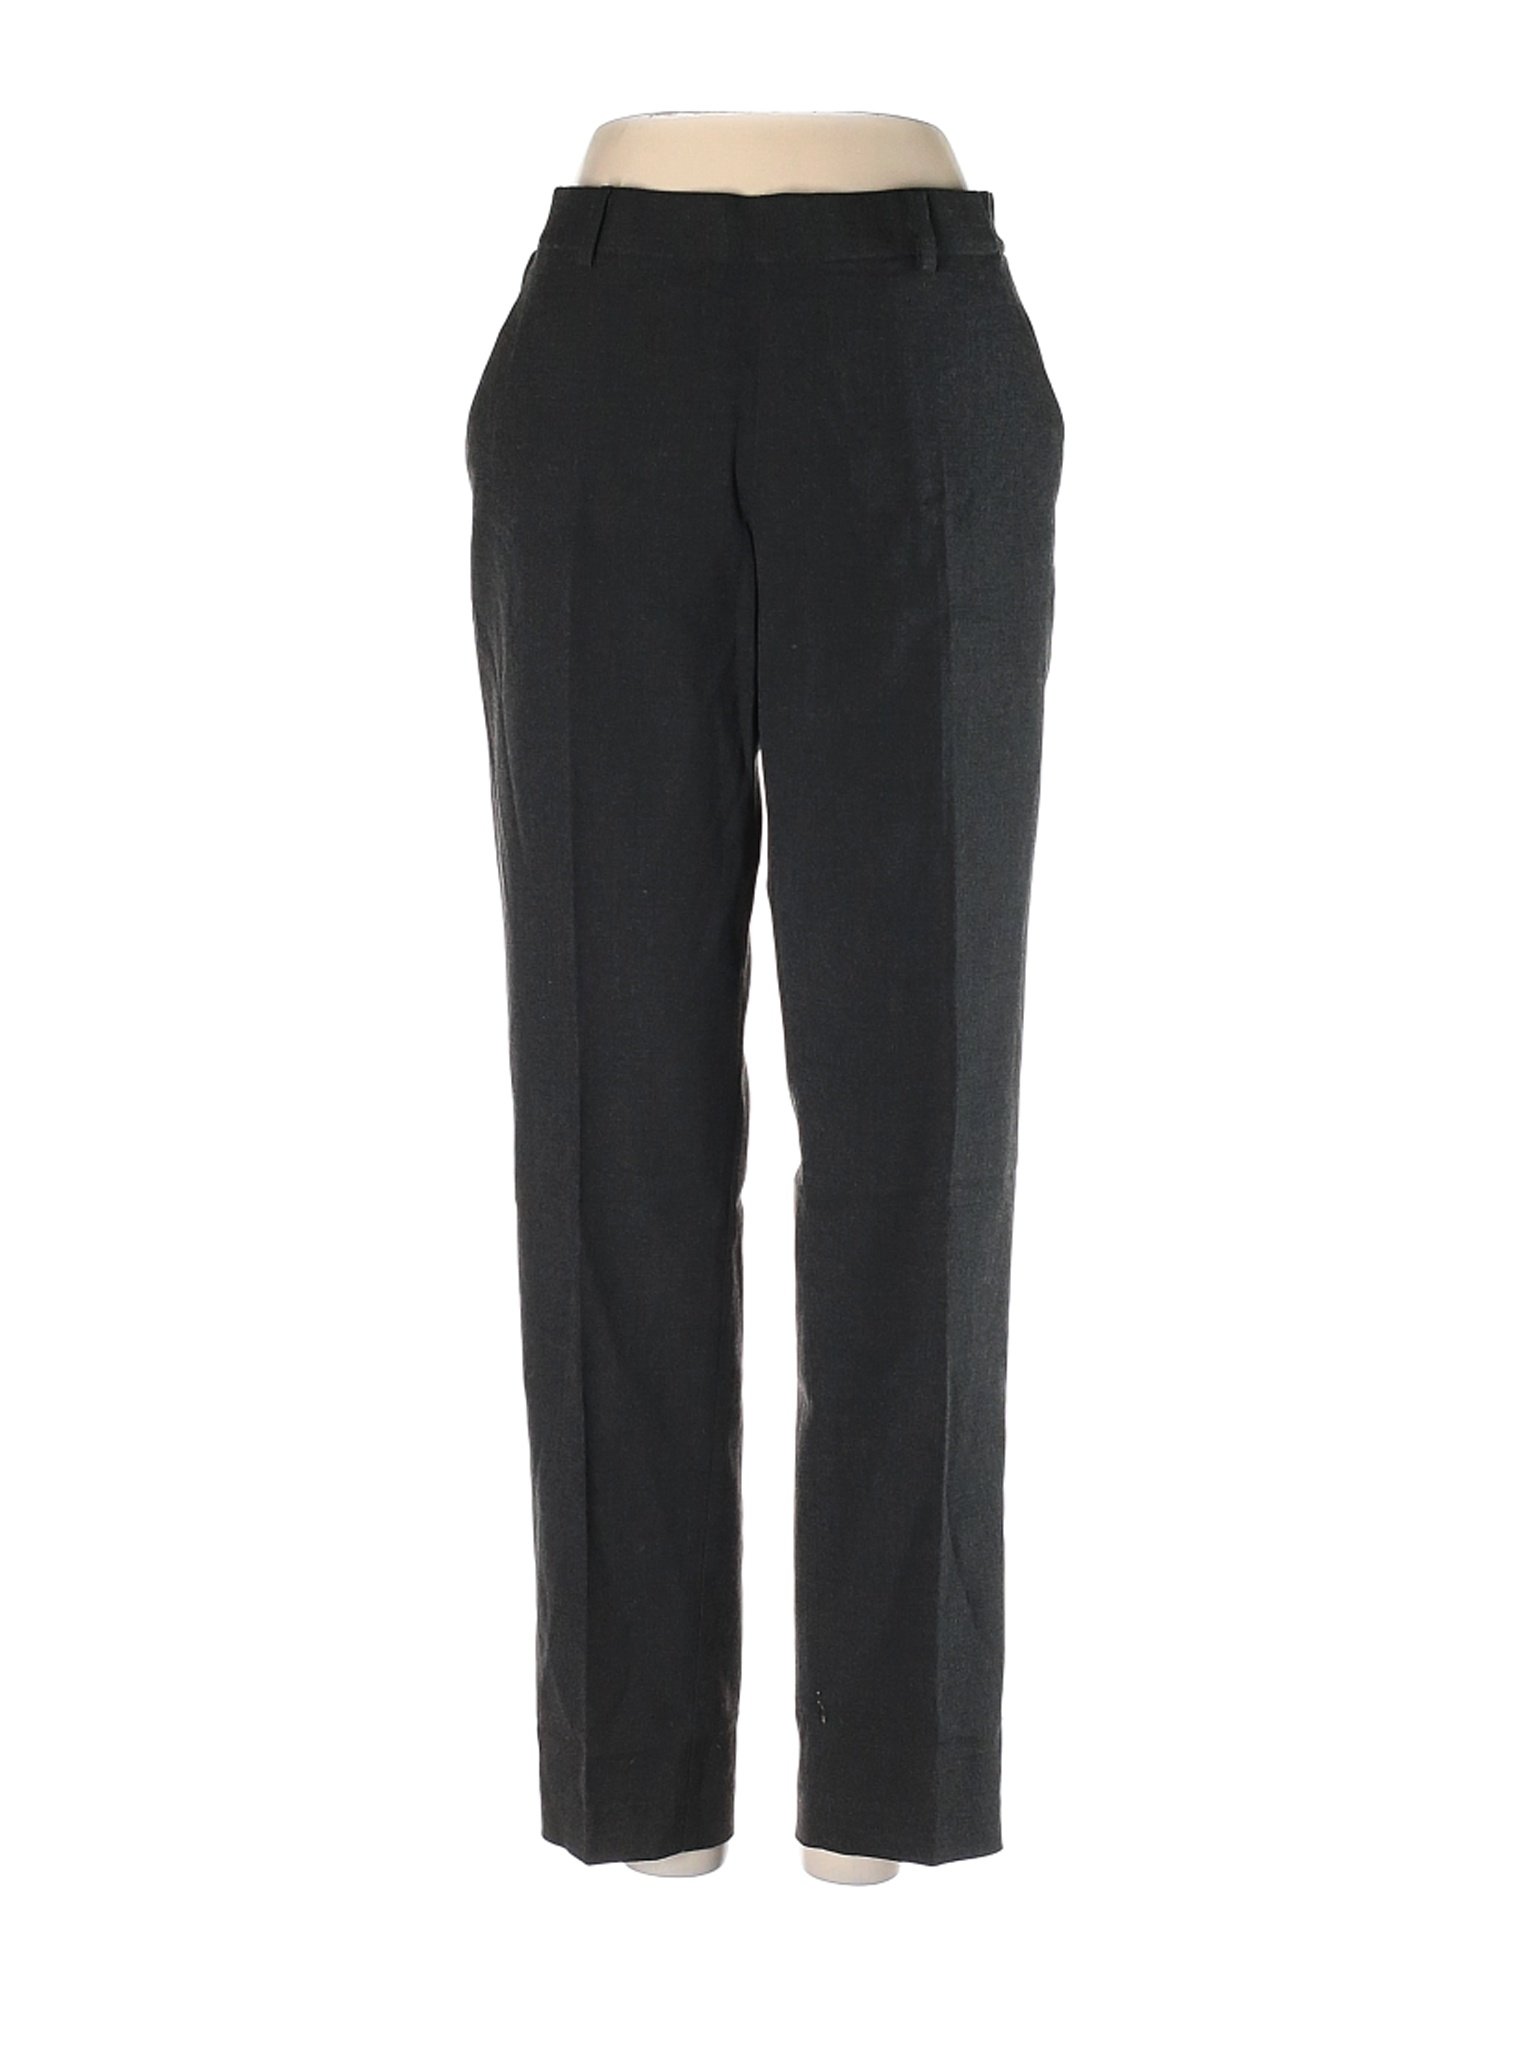 Uniqlo Women Black Dress Pants 26W | eBay